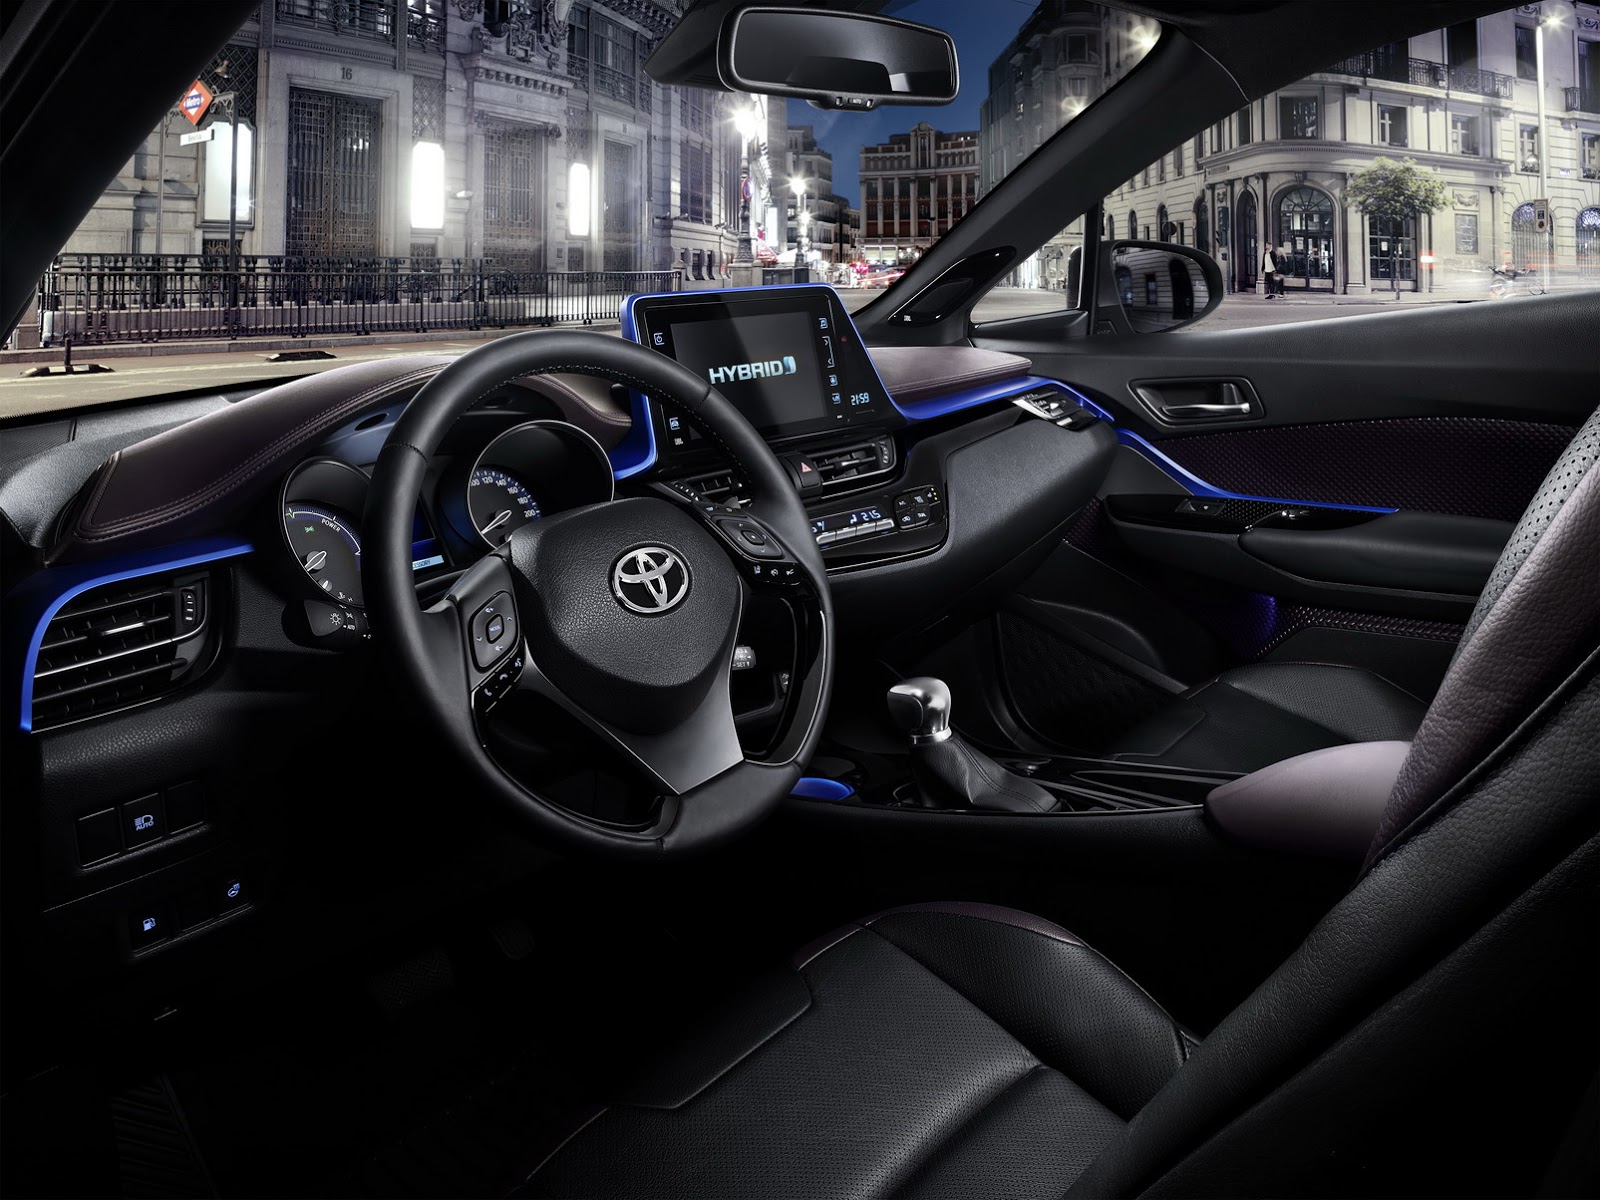 
Bên trong Toyota C-HR có bảng táp-lô được thiết kế đơn giản và gọn gàng. Các nút bấm của Toyota C-HR được giảm thiểu nhờ màn hình cảm ứng 8 inch cỡ lớn trên bảng táp-lô. Màn hình sẽ hiển thị giao diện giao tiếp với người lái HMI tái thiết kế của hãng Toyota. Ngoài ra, các nút bấm và màn hình đều hướng về phía người lái.
